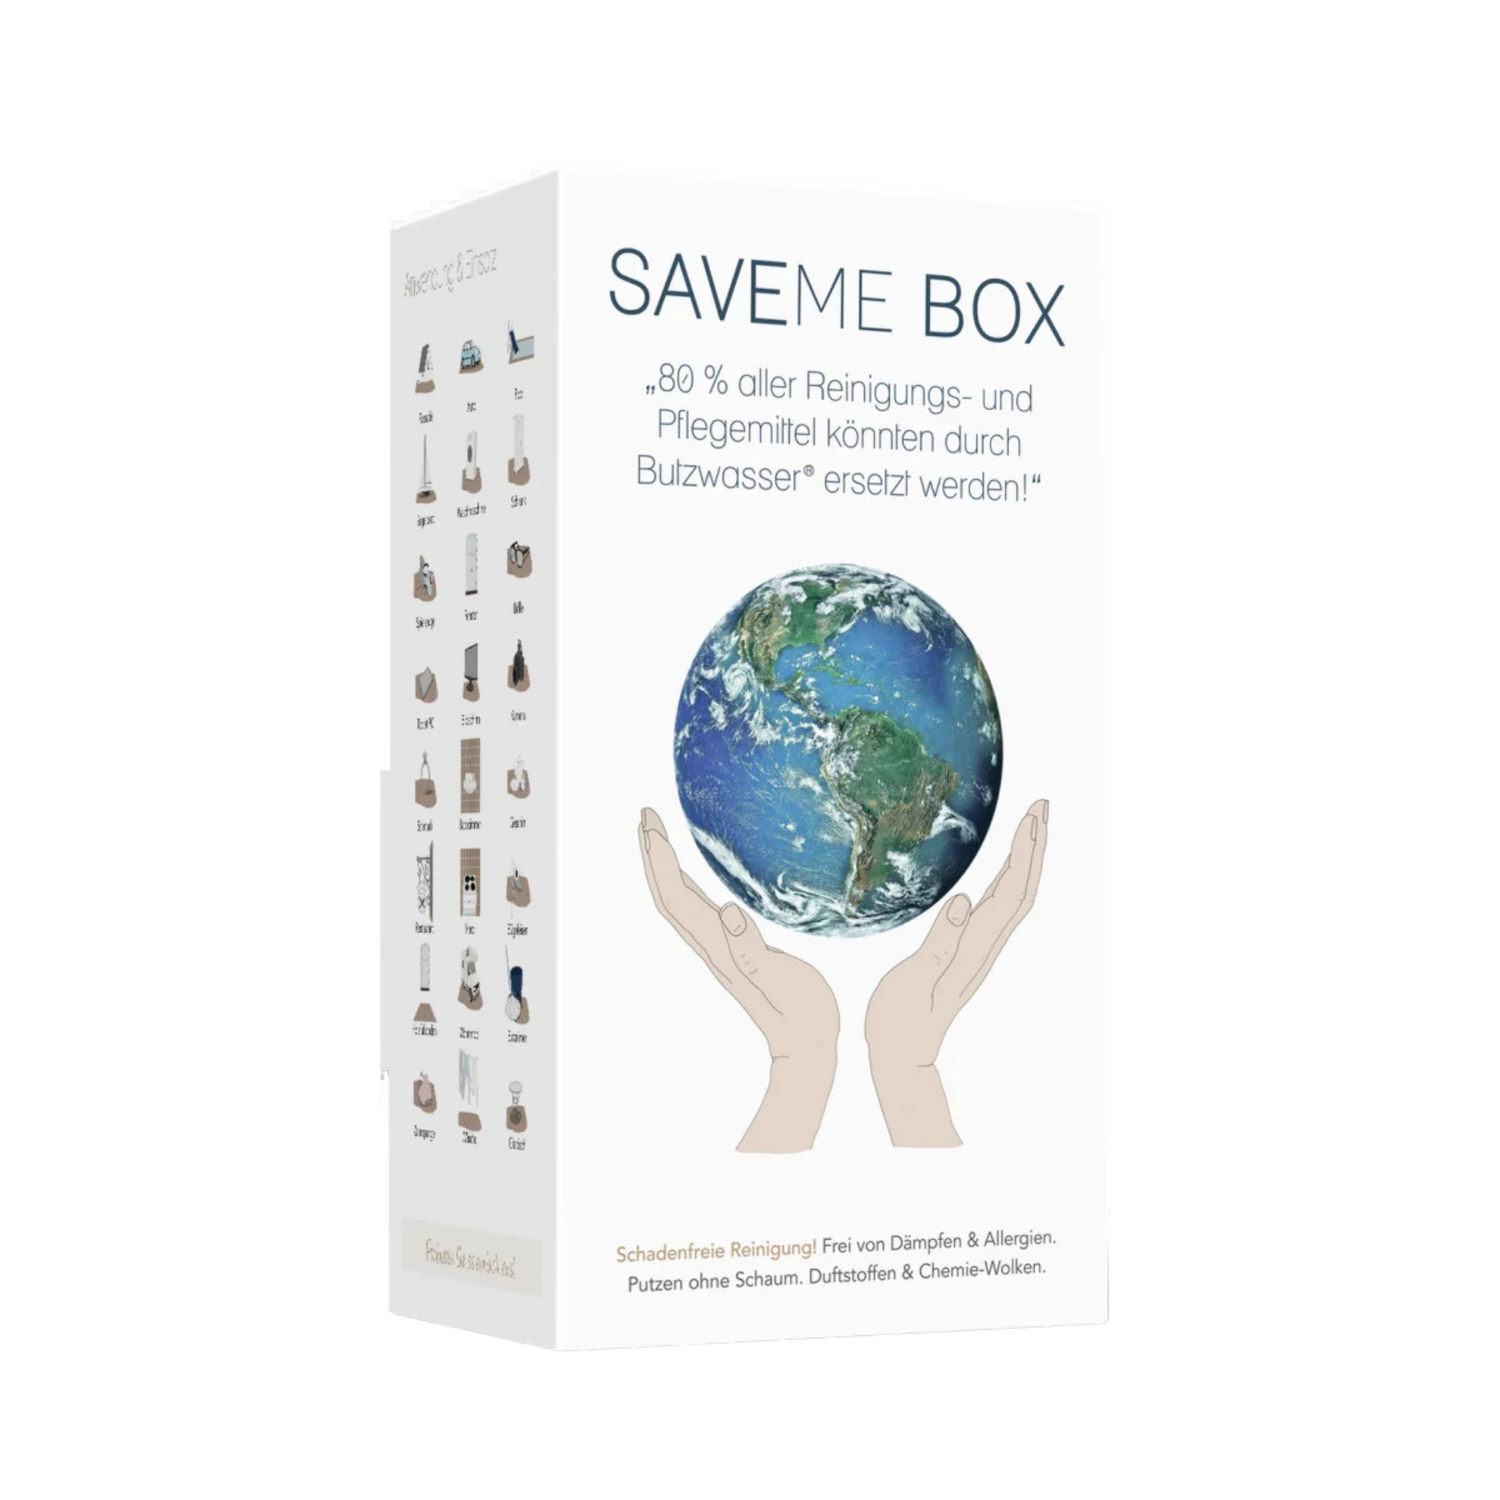 Save Me Box Humanum inkl. Butzwasser Humanum Pflanzen Haus Wasser Veredeln Kornkammer Natur